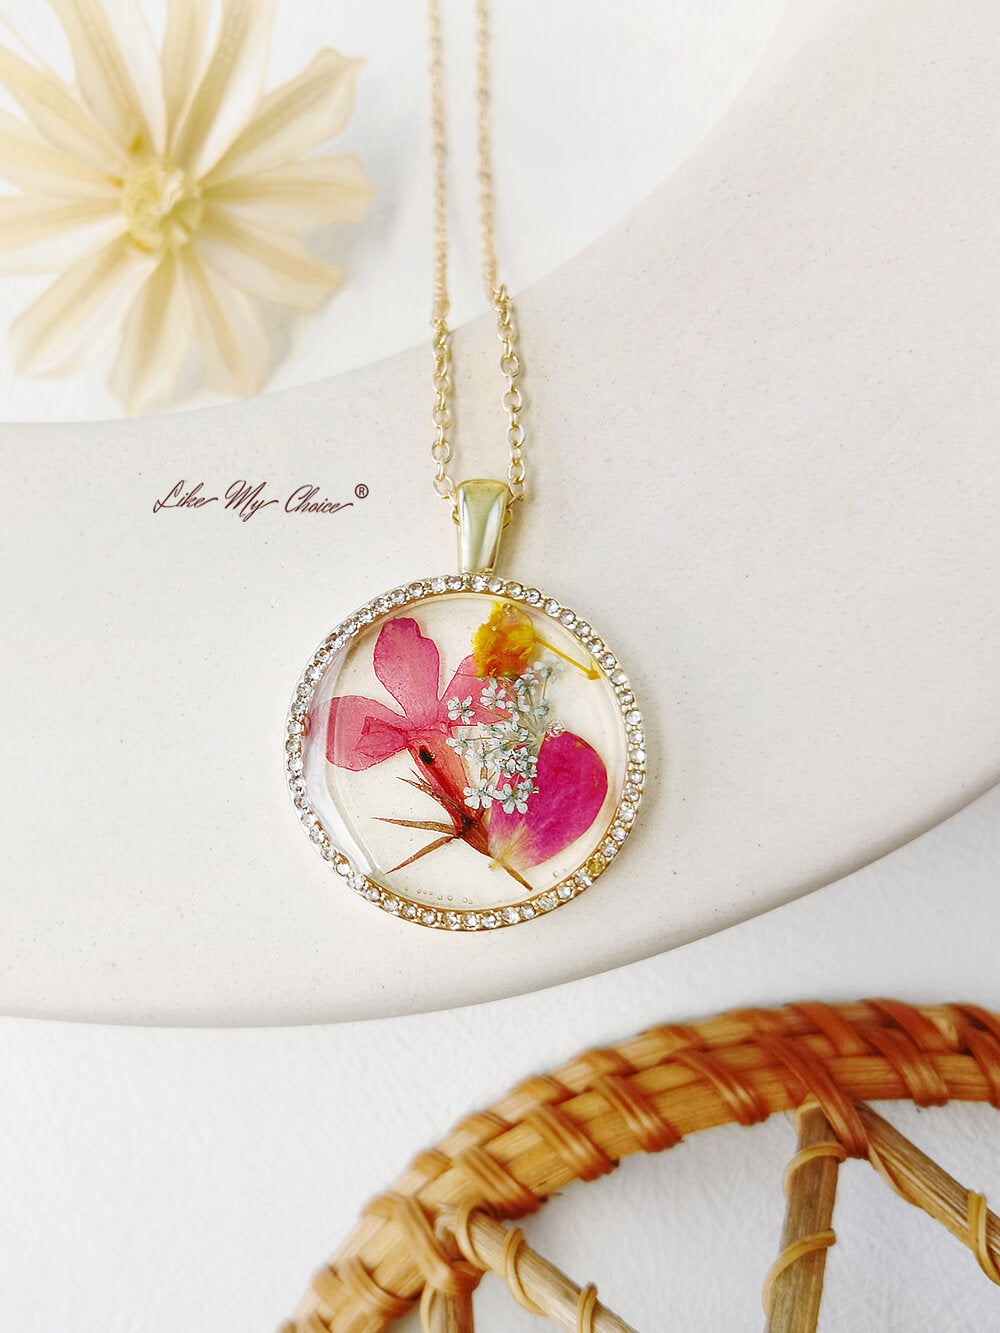 Collier avec pendentif rond en résine et cristal, fleur d'orchidée dansante